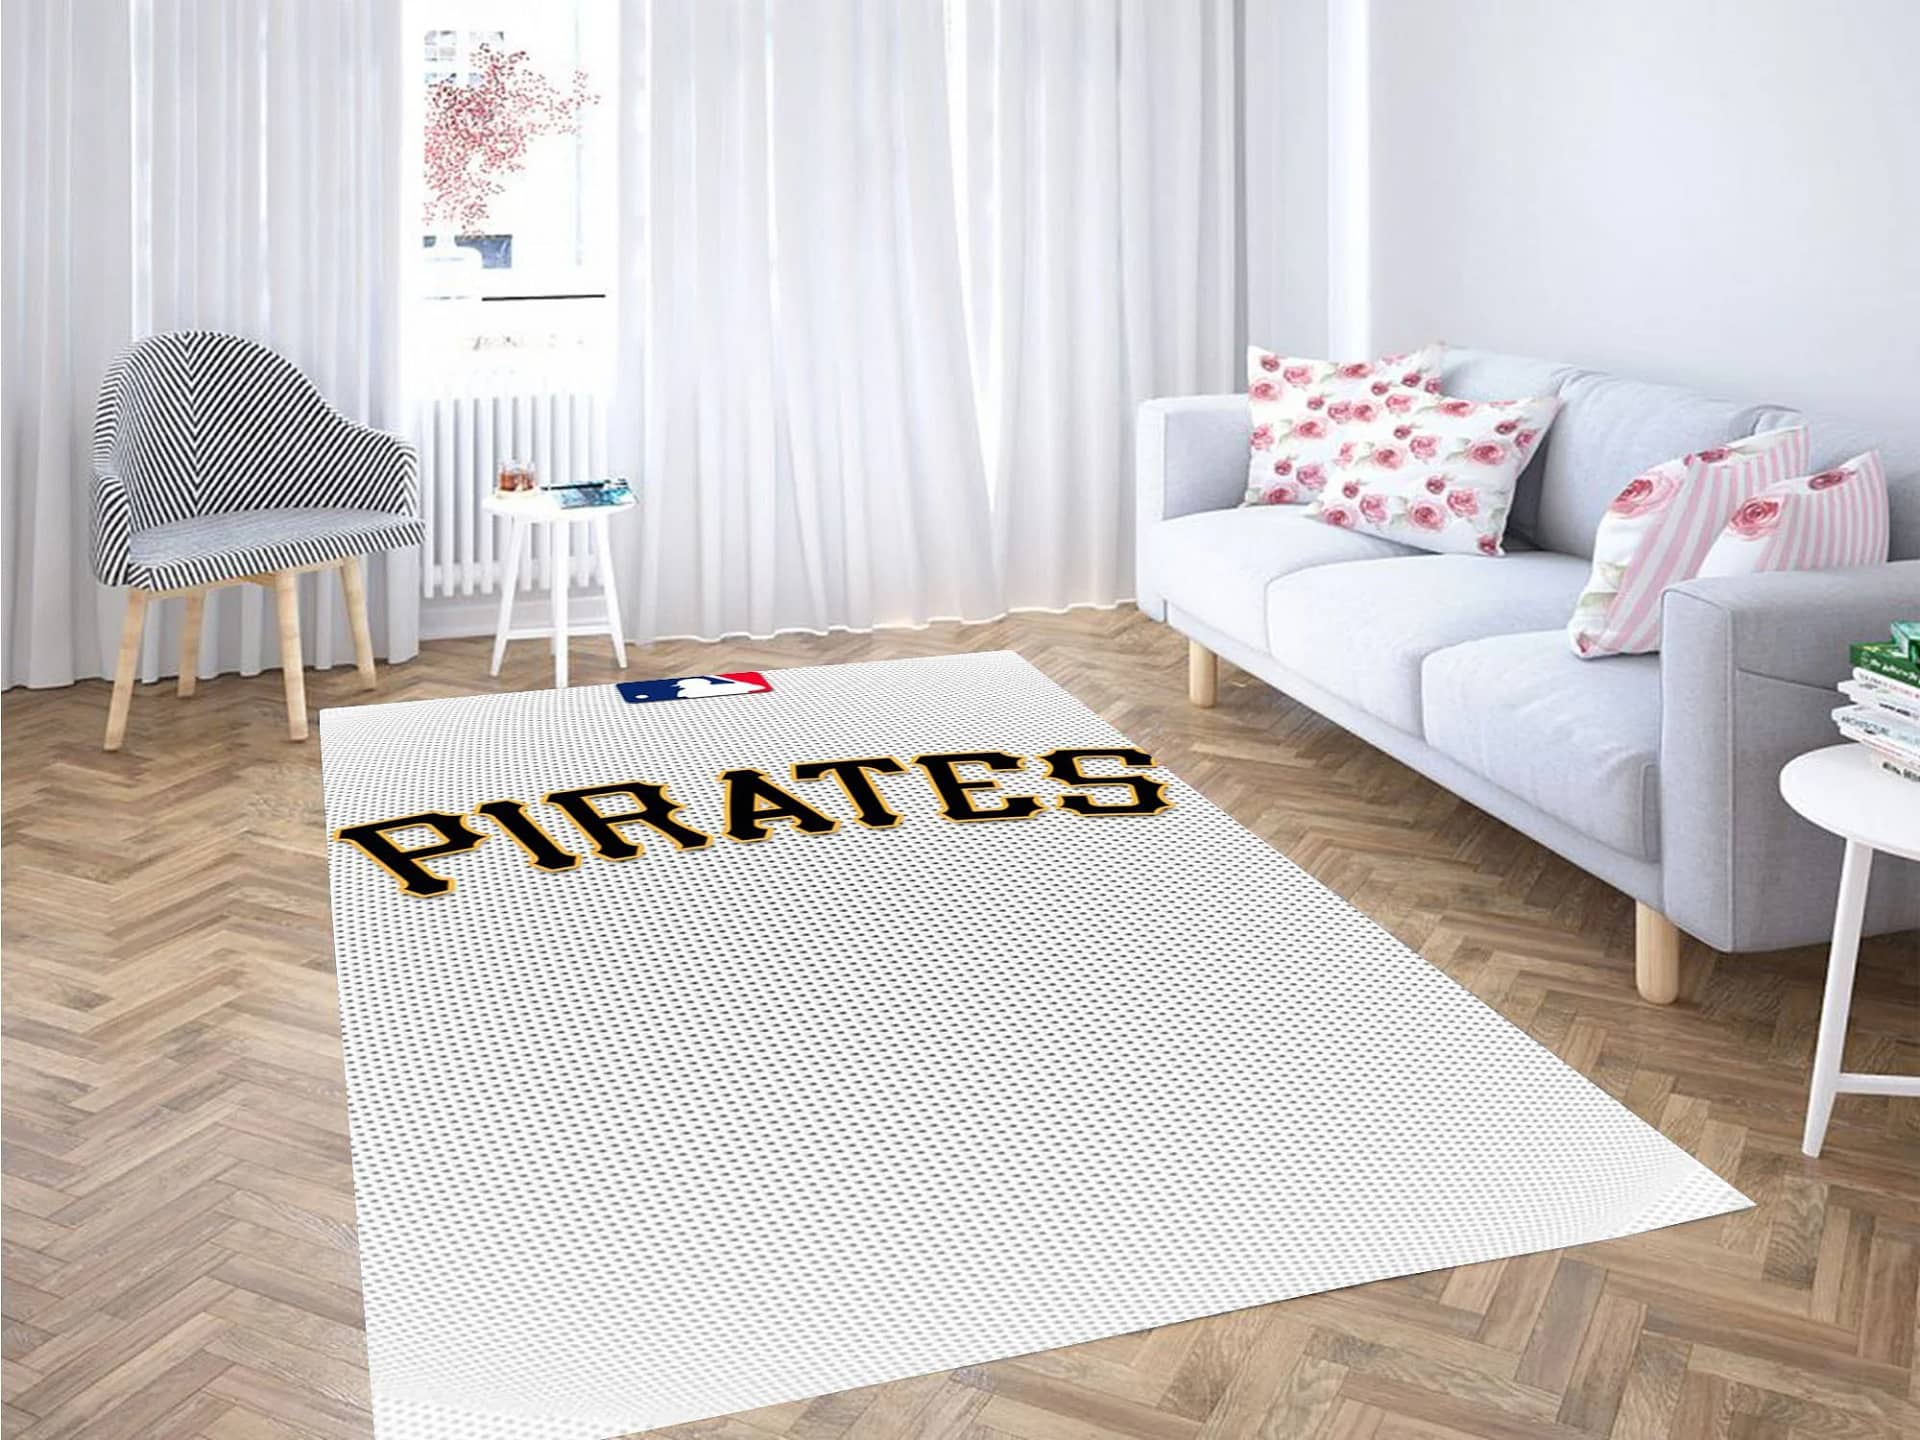 Pirates Baseball Carpet Rug